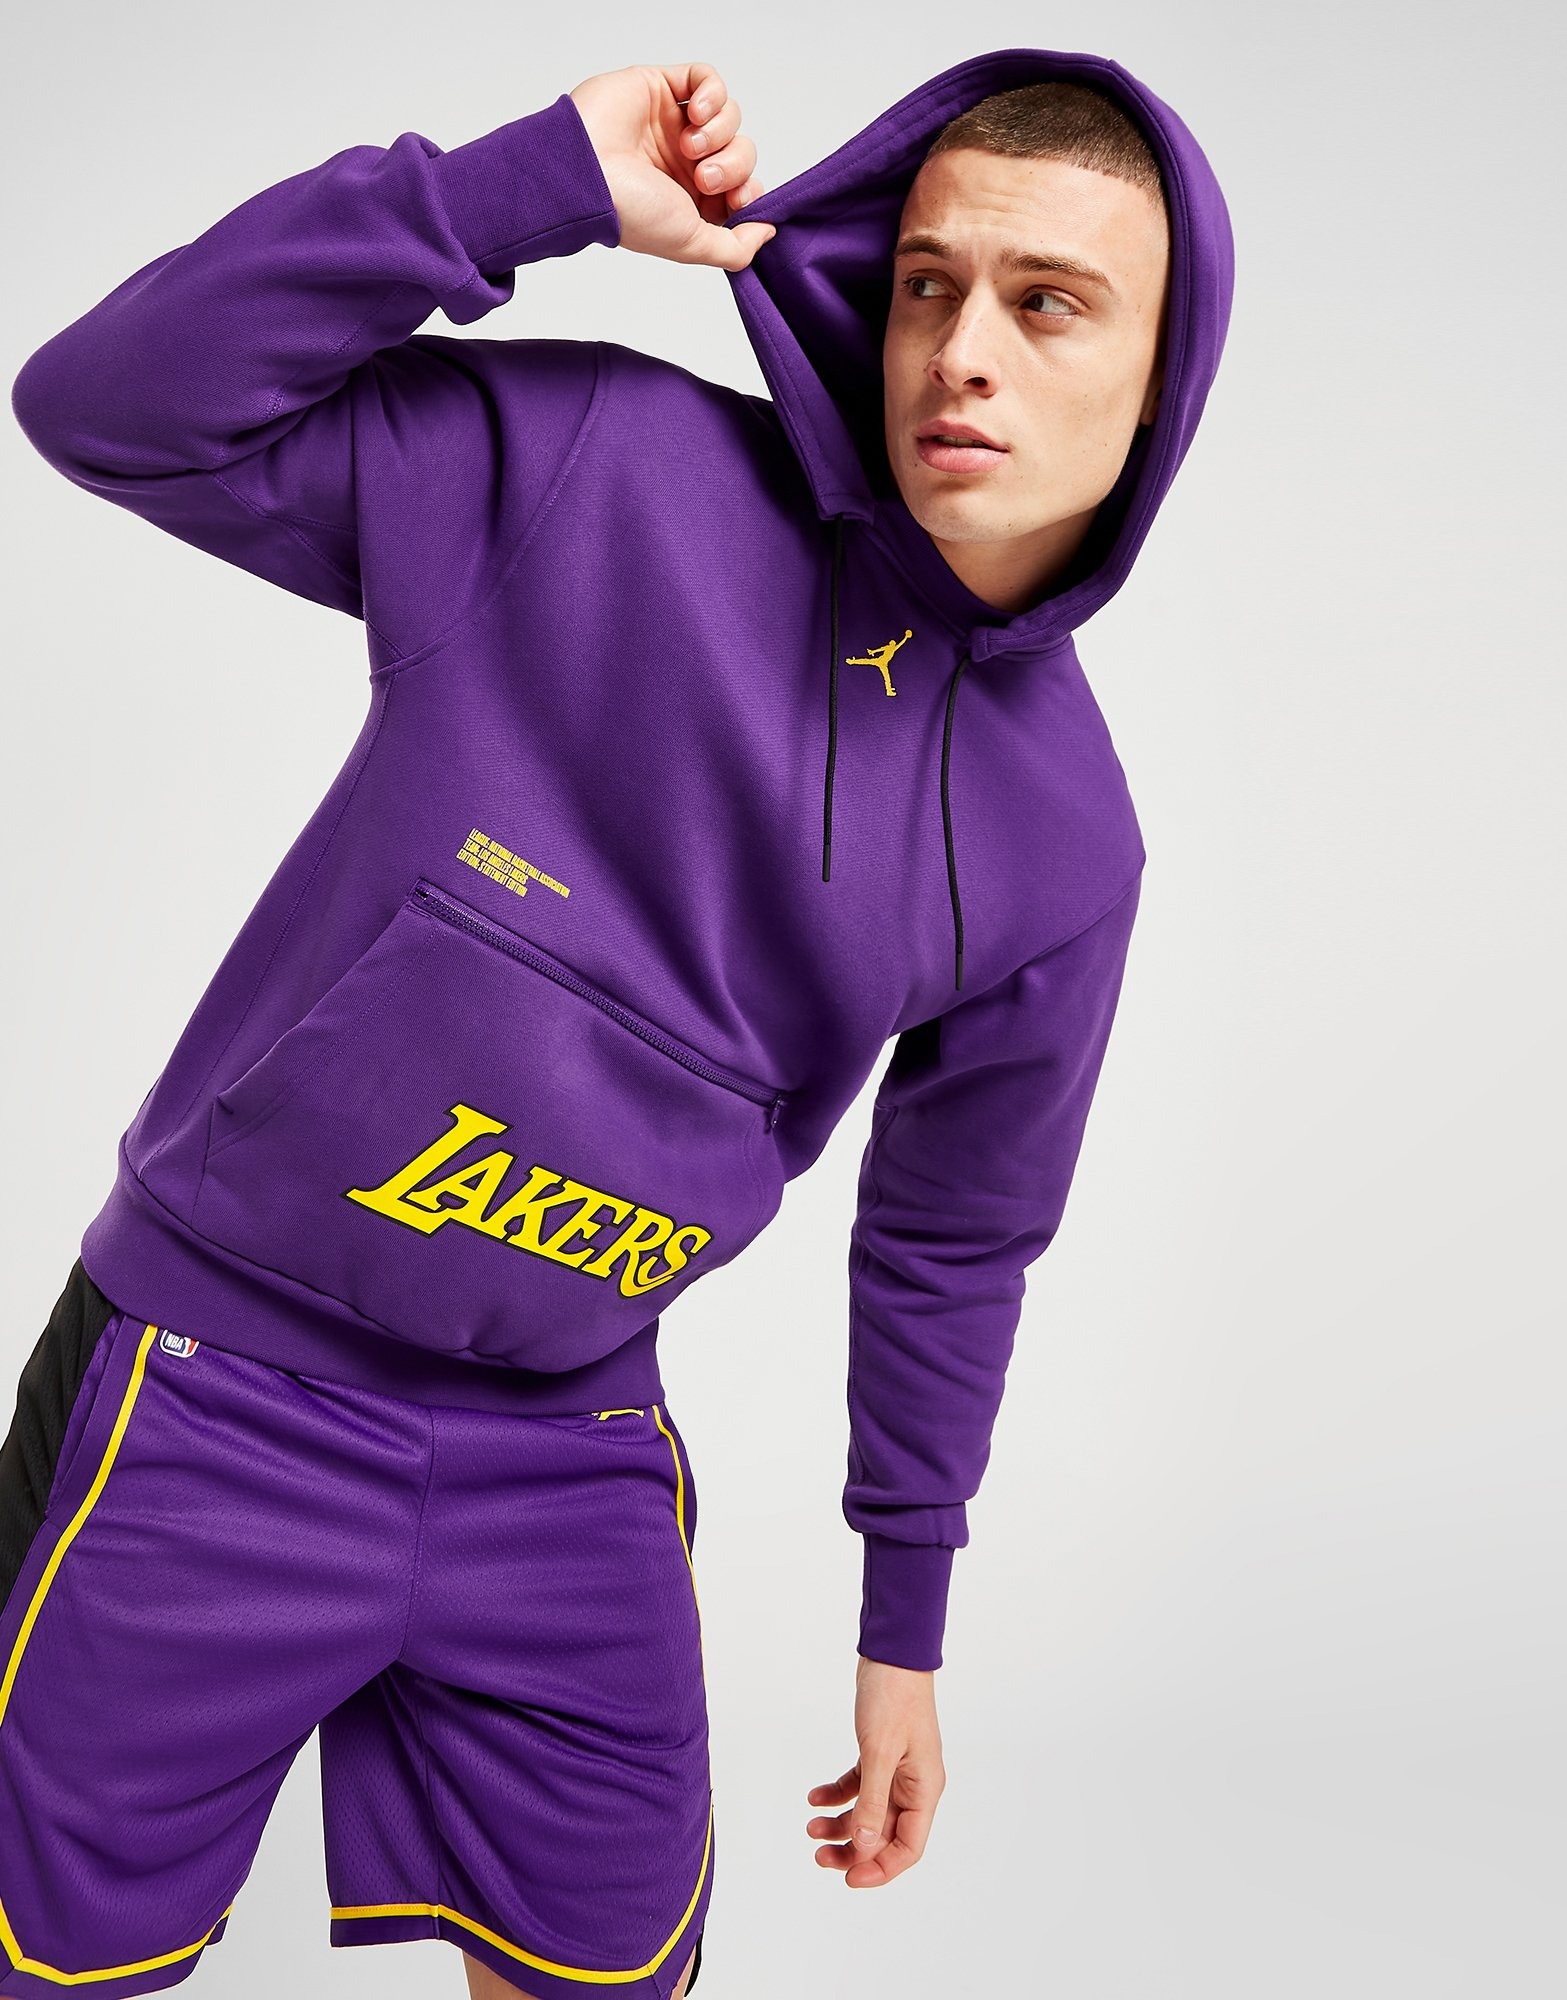 Premium Los Angeles Lakers NBA Basketball Shorts Pockets S-3XL